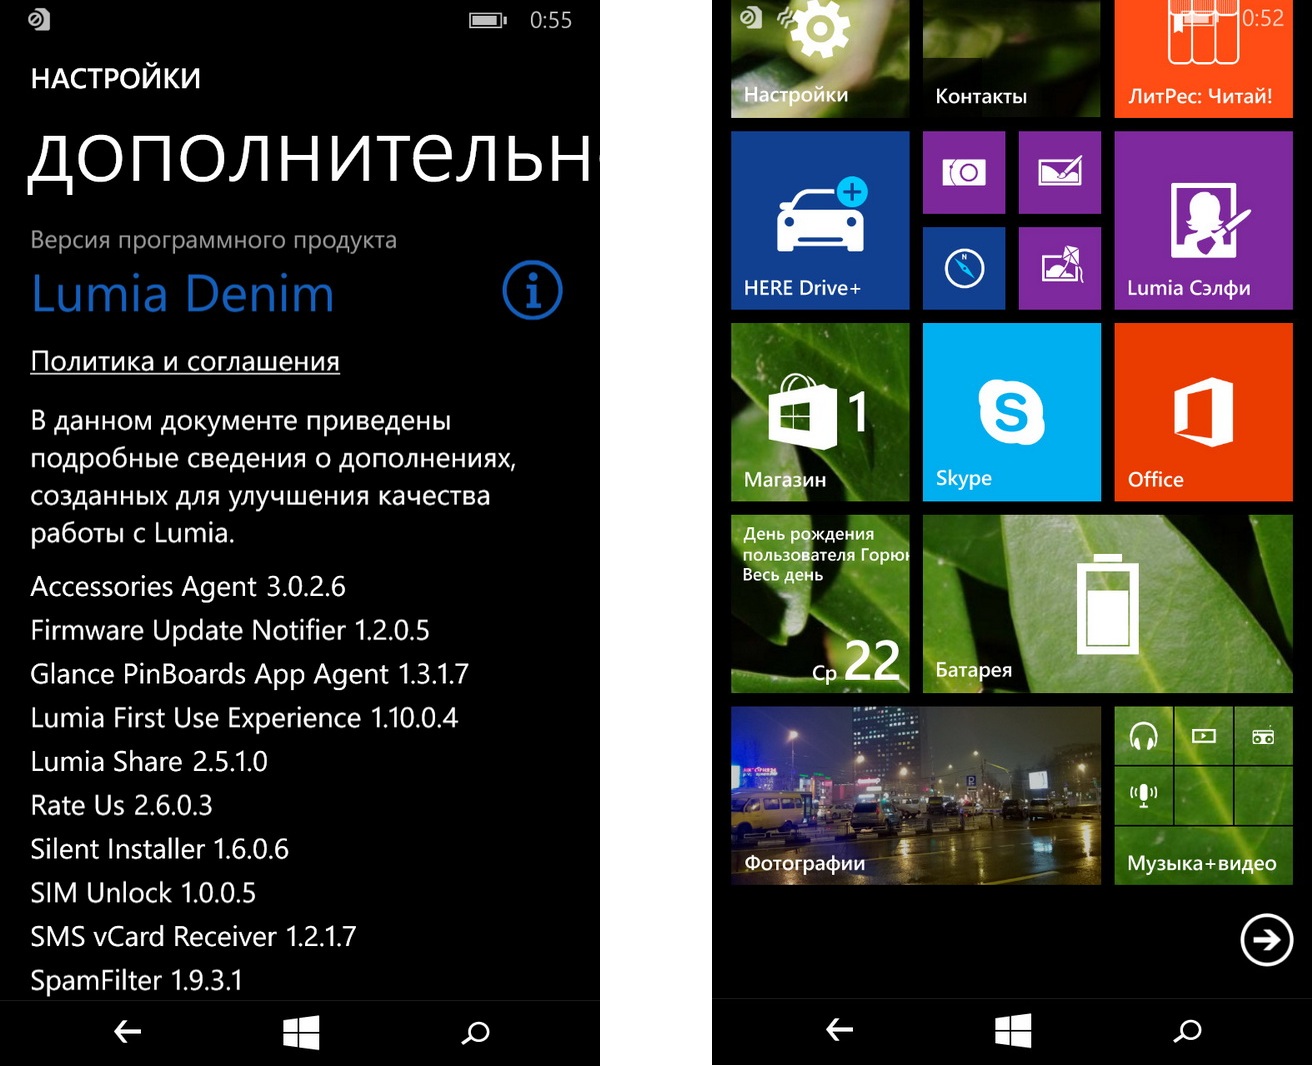 Nokia Lumia 730 - скриншот